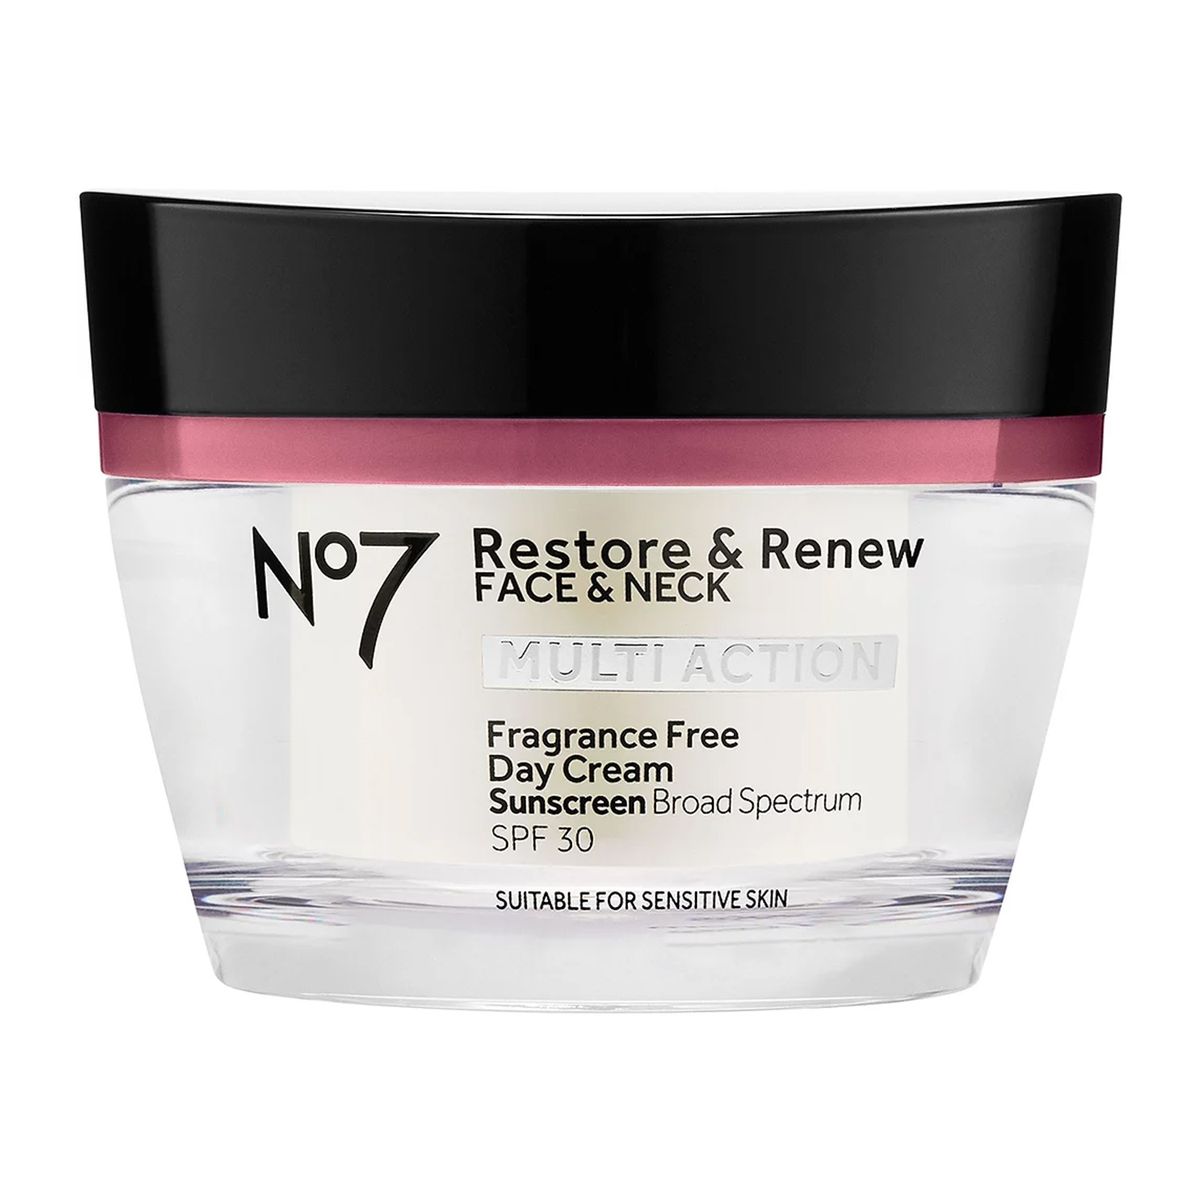 No7 Restore & Renew Face & Neck Multi Action Fragrance Free Day Cream SPF 30